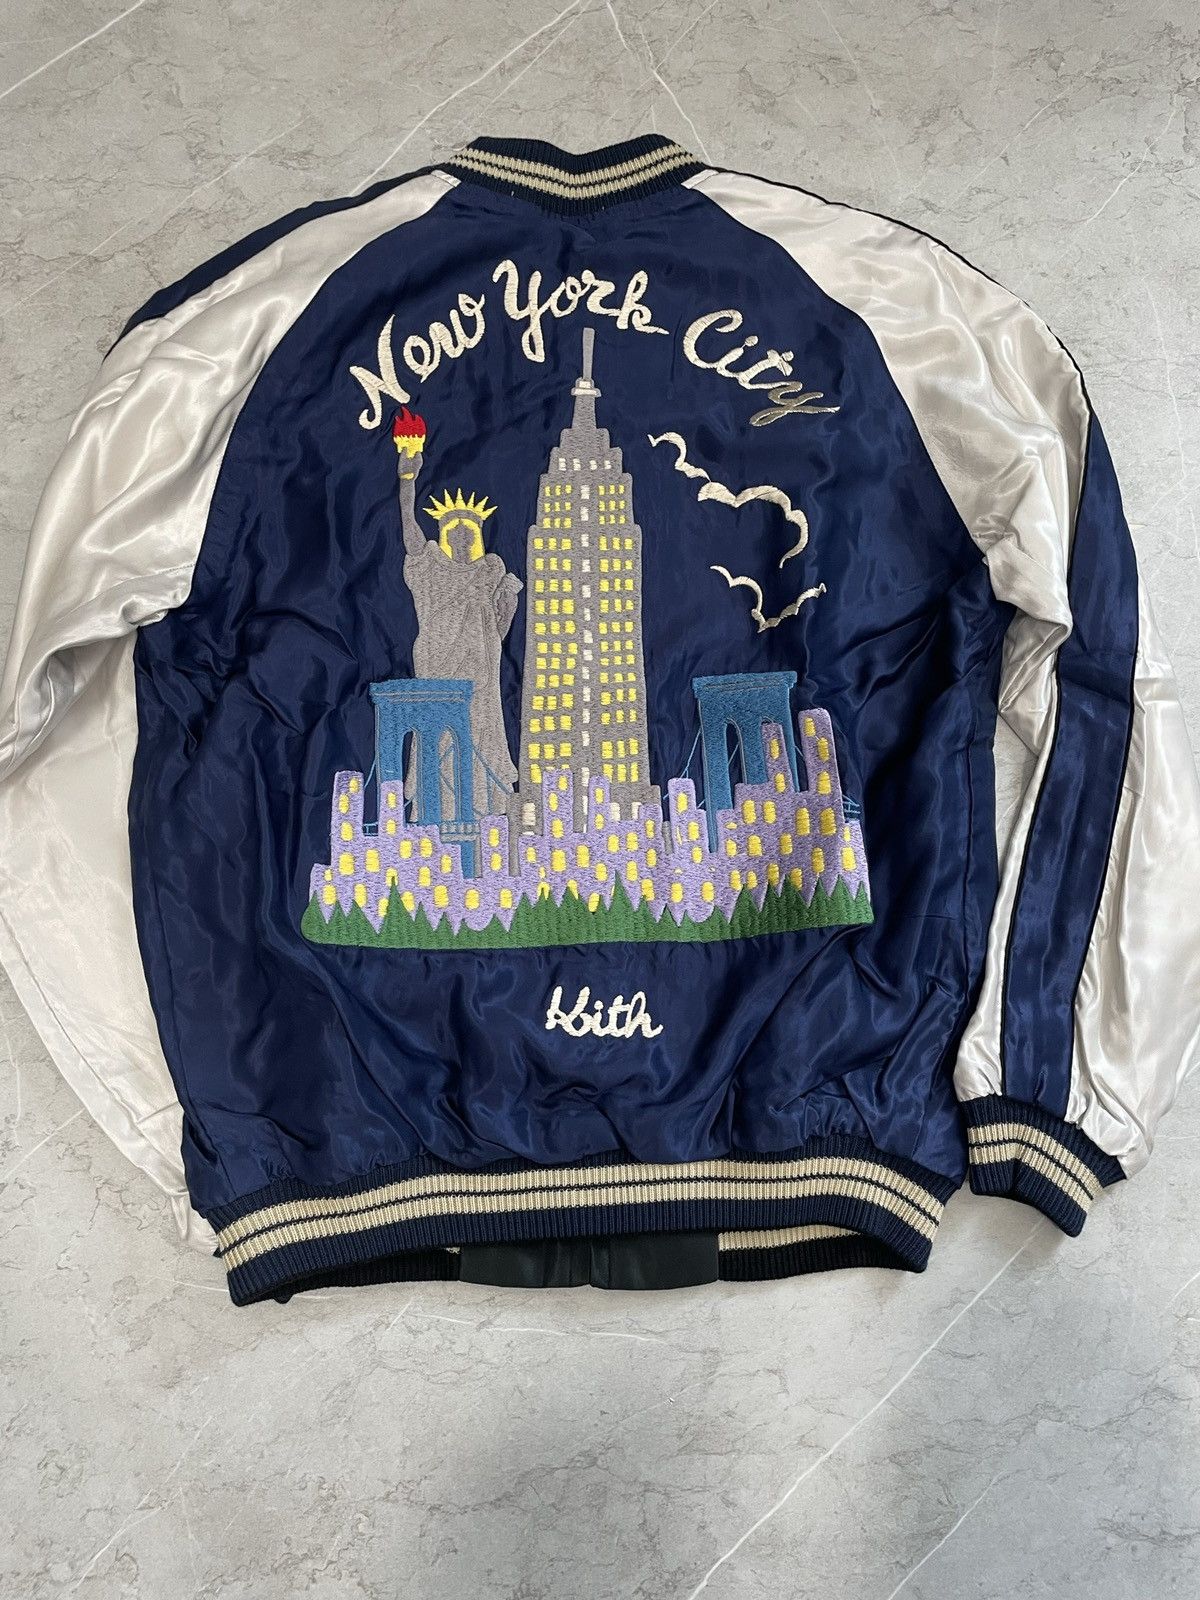 Kith Kith x tailor Toyo reversible souvenir jacket sample | Grailed